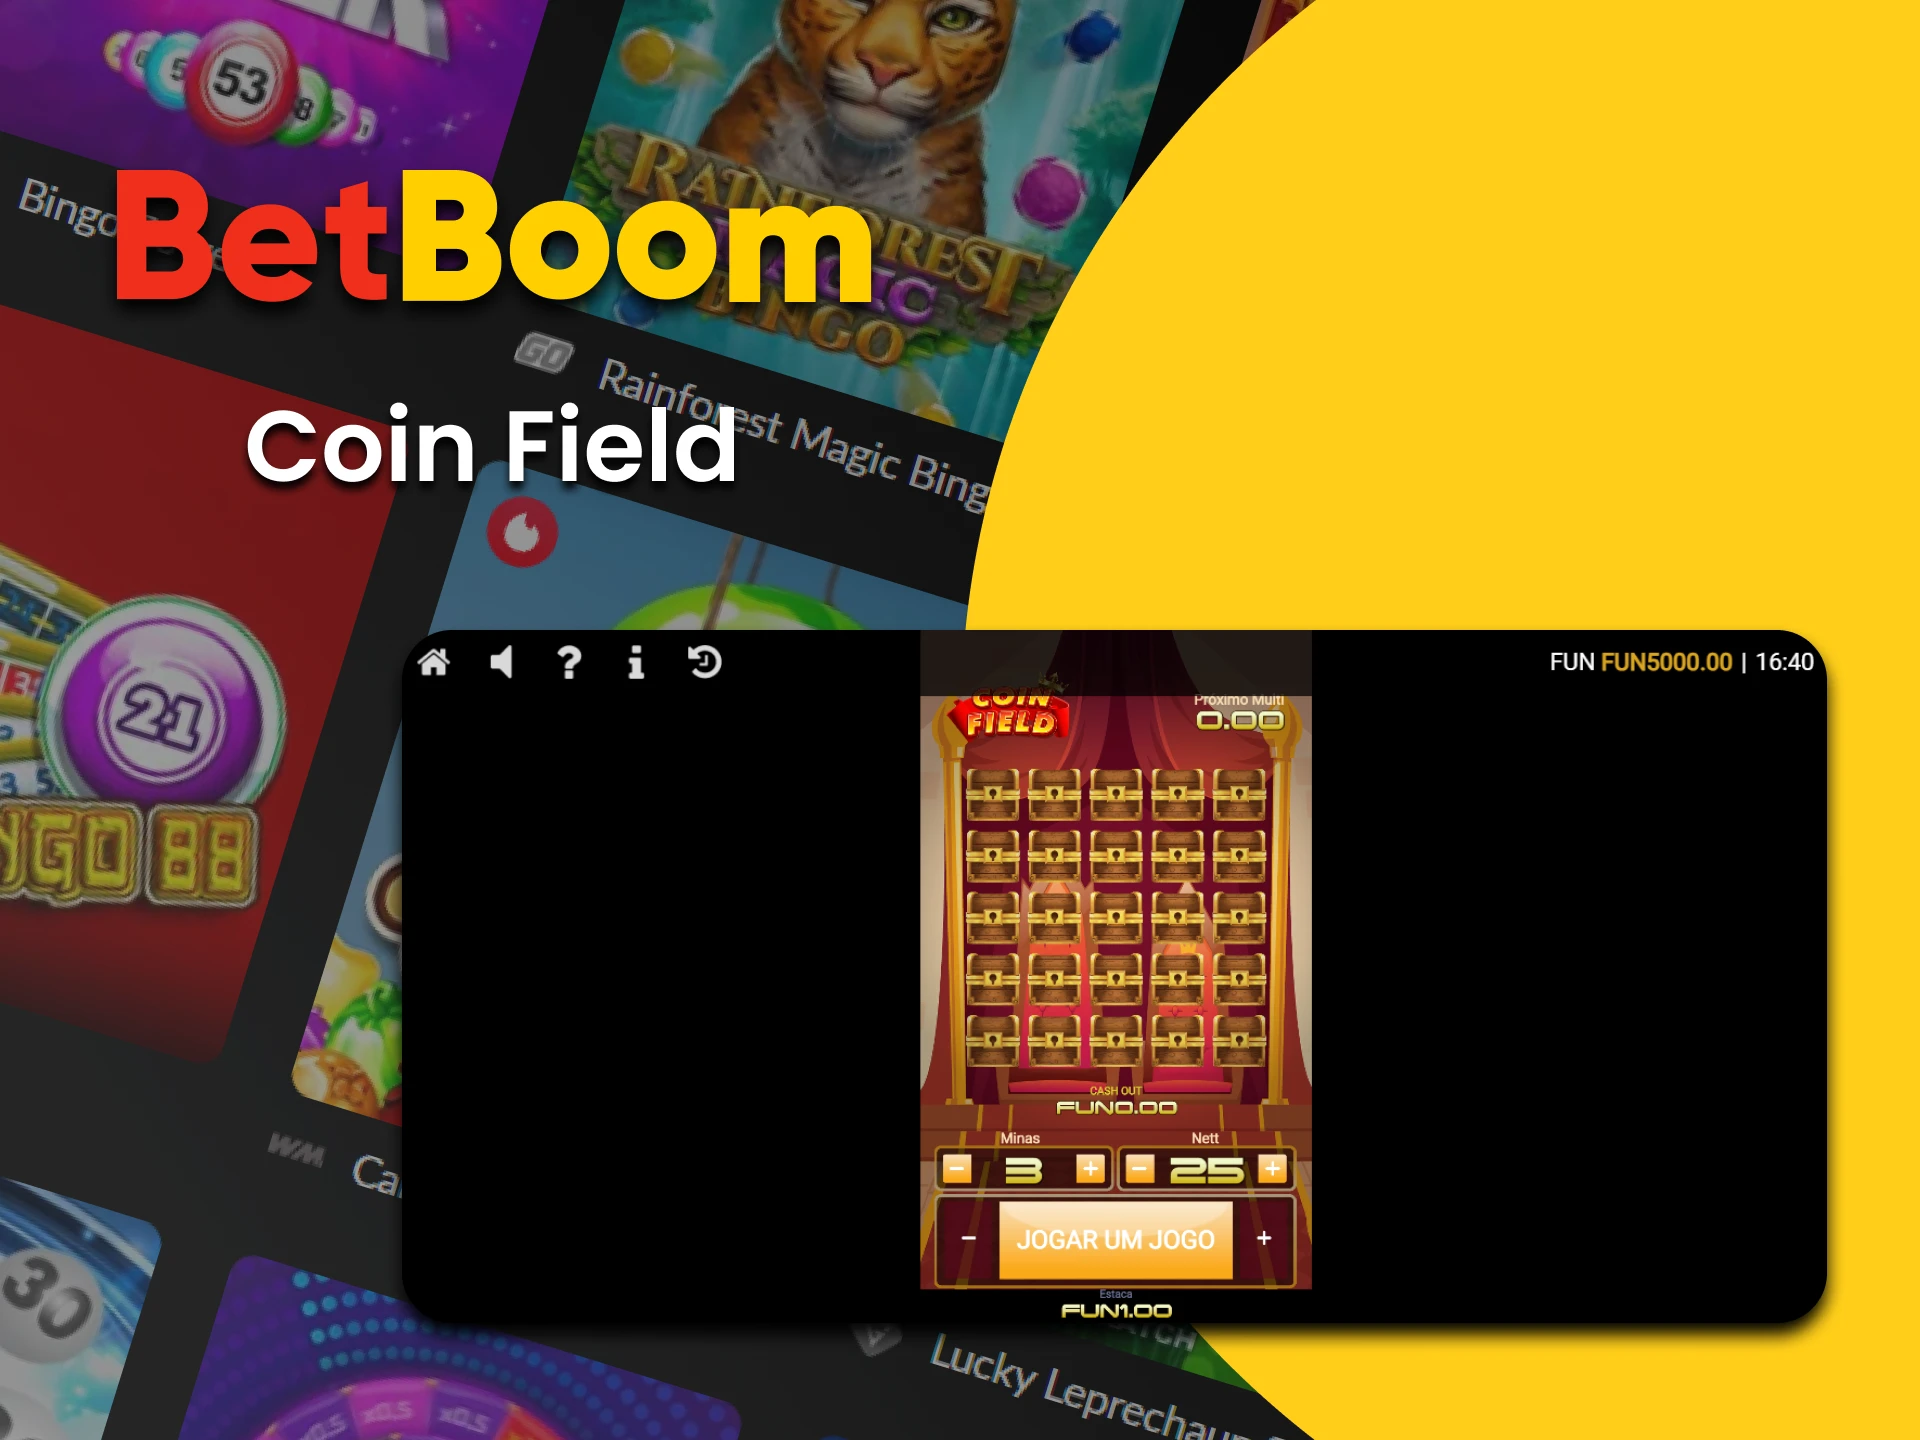 Vá para a seção Bingo do BetBoom para jogar Coin Field.